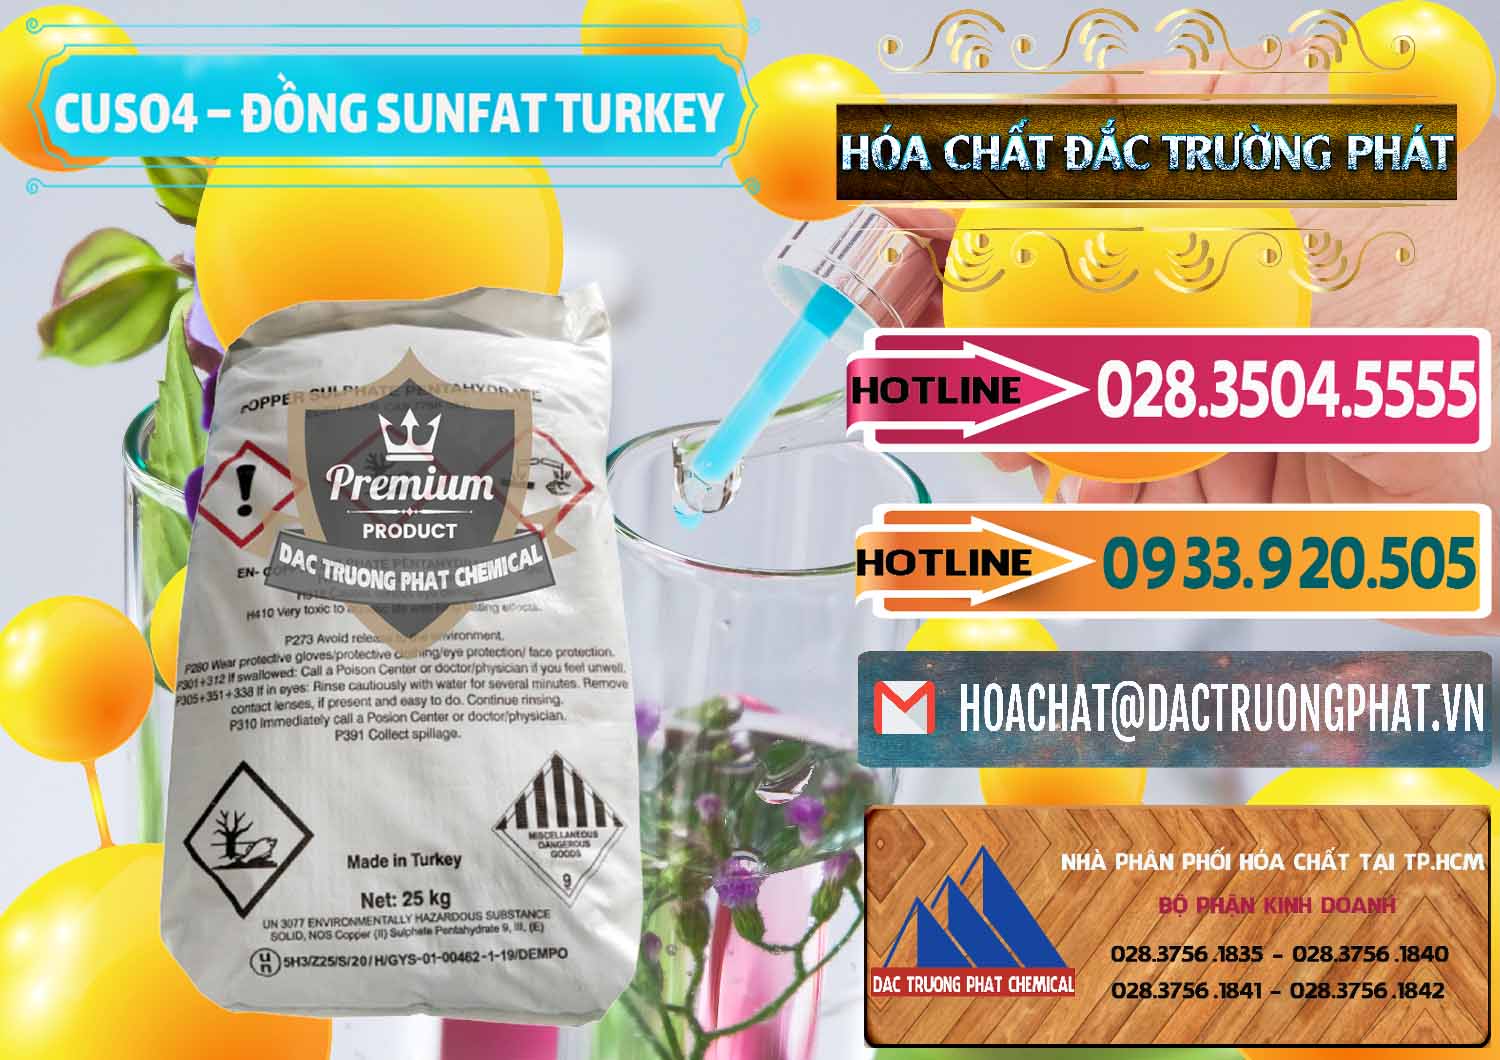 Nơi chuyên cung cấp & bán CuSO4 – Đồng Sunfat Thổ Nhĩ Kỳ Turkey - 0481 - Công ty chuyên nhập khẩu - phân phối hóa chất tại TP.HCM - dactruongphat.vn